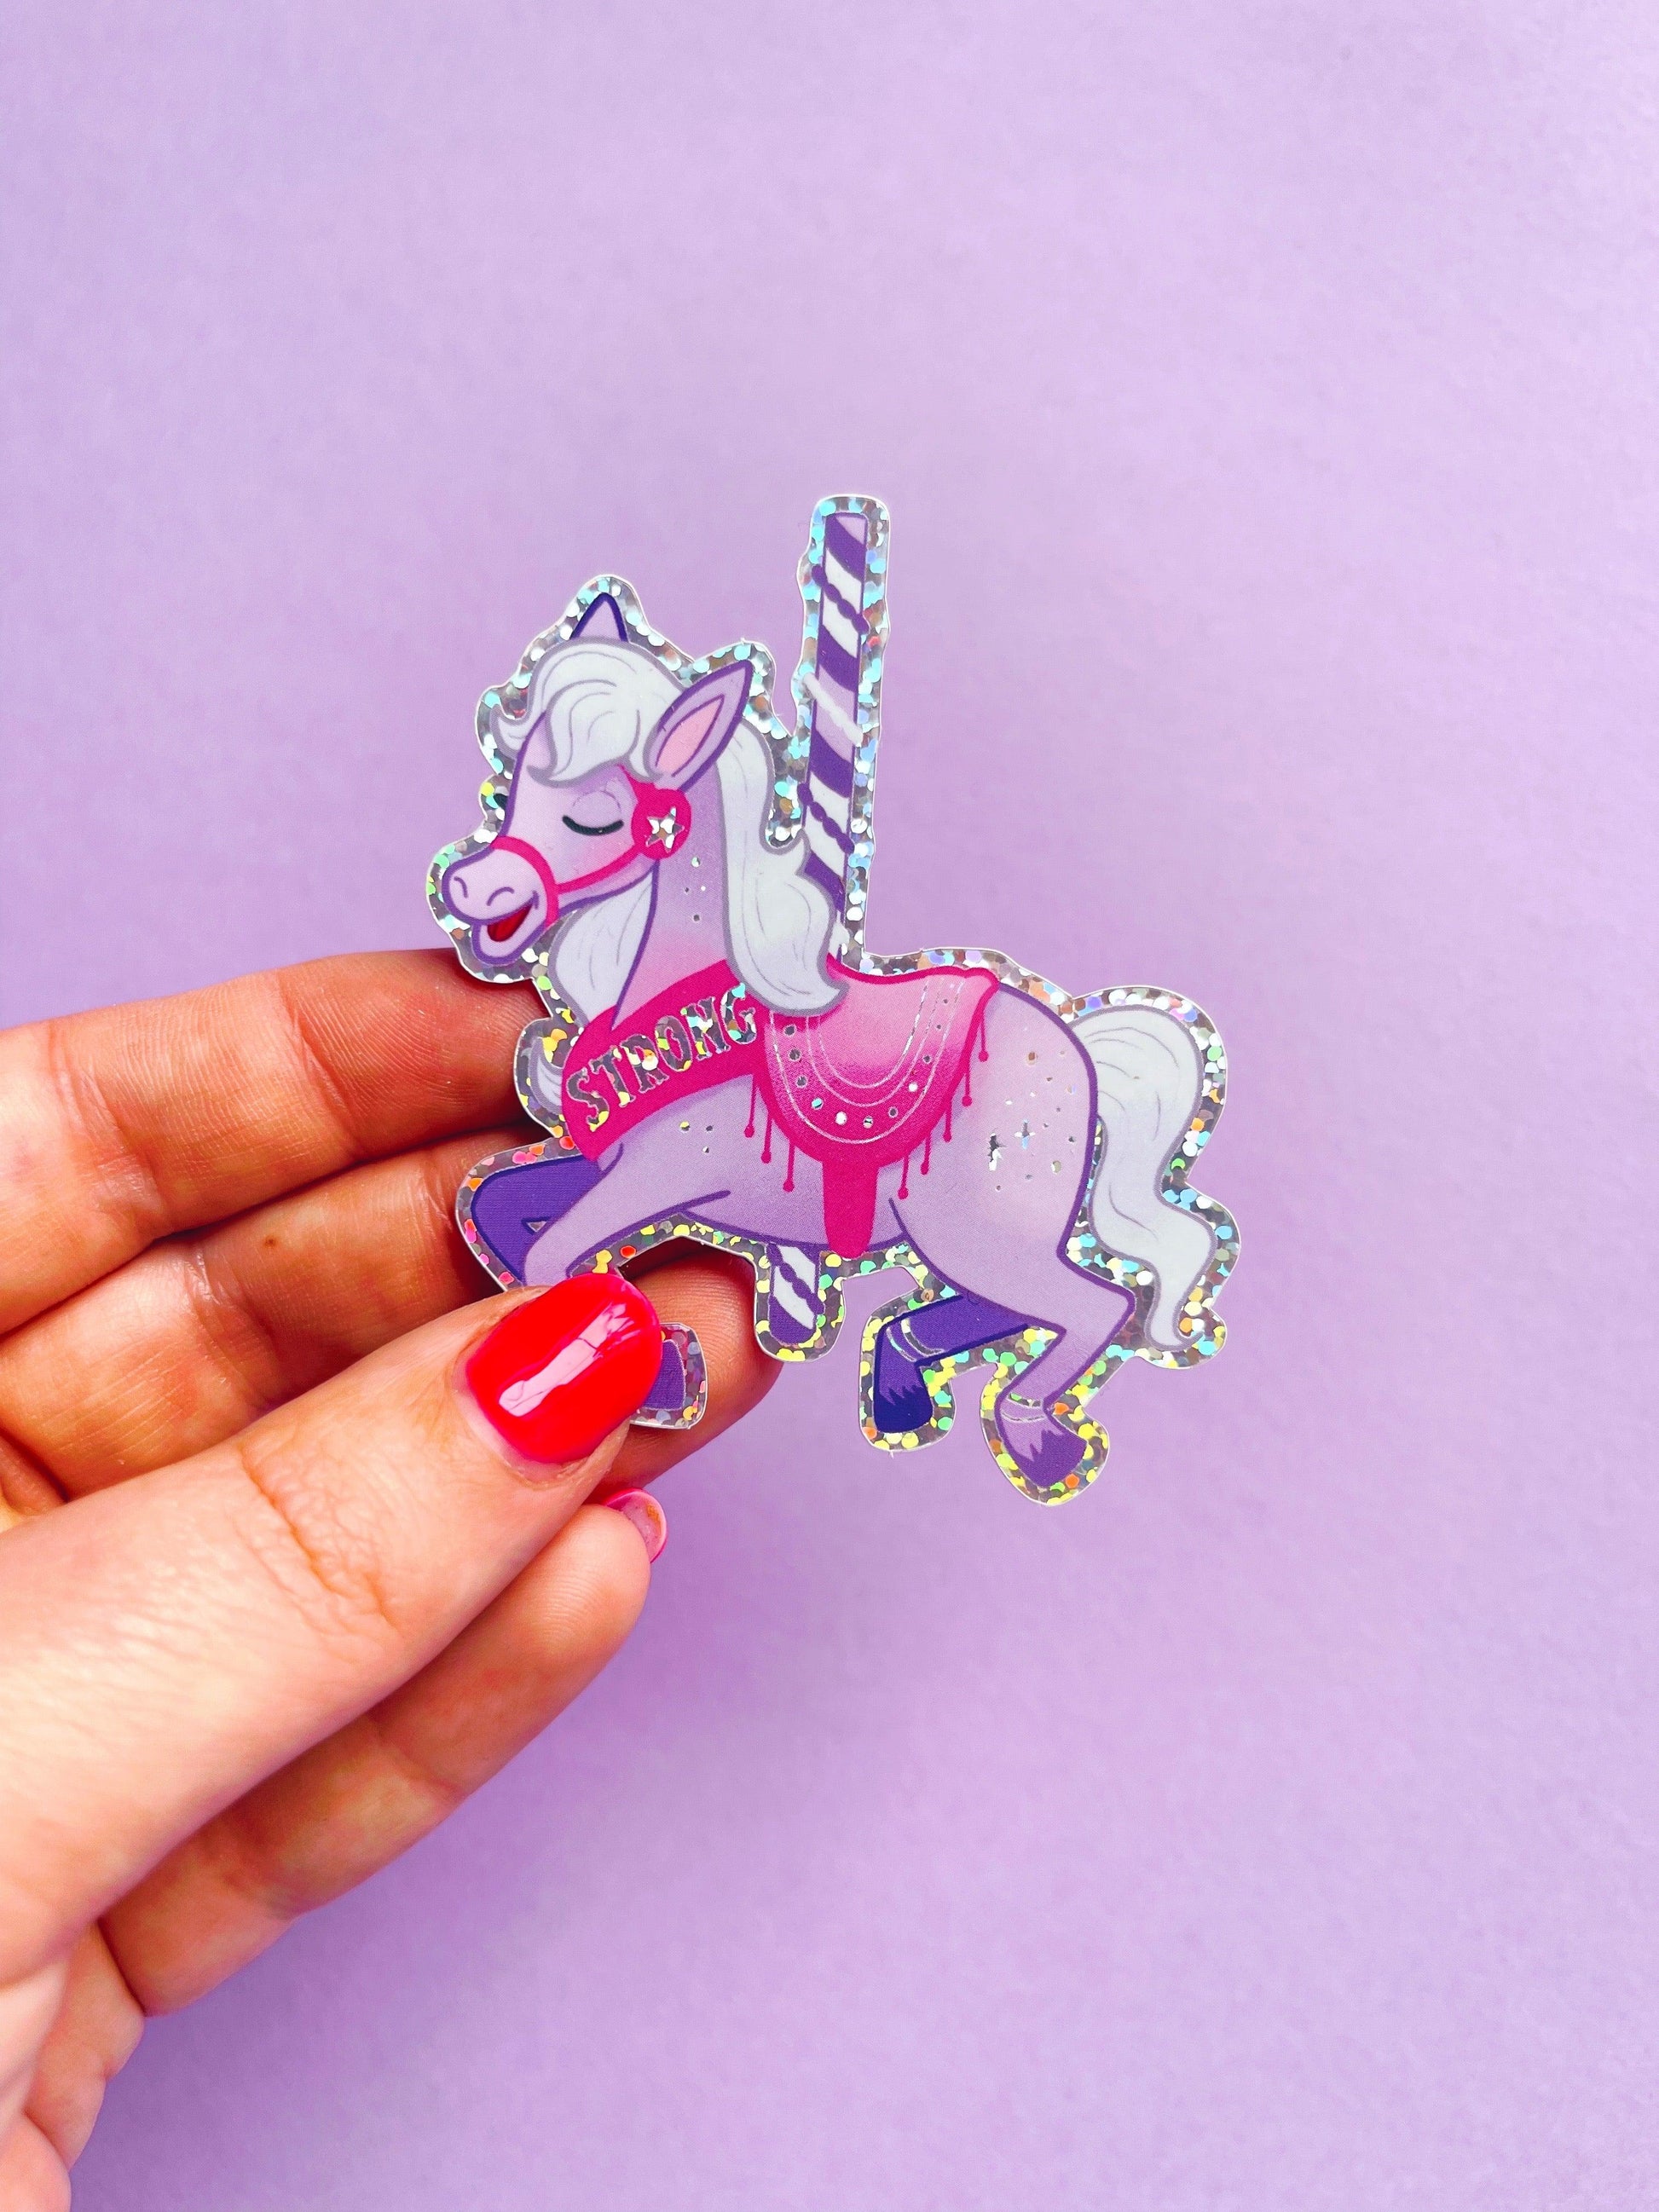 Strong Carousel Horse Glitter Vinyl Sticker - Emily Harvey Art